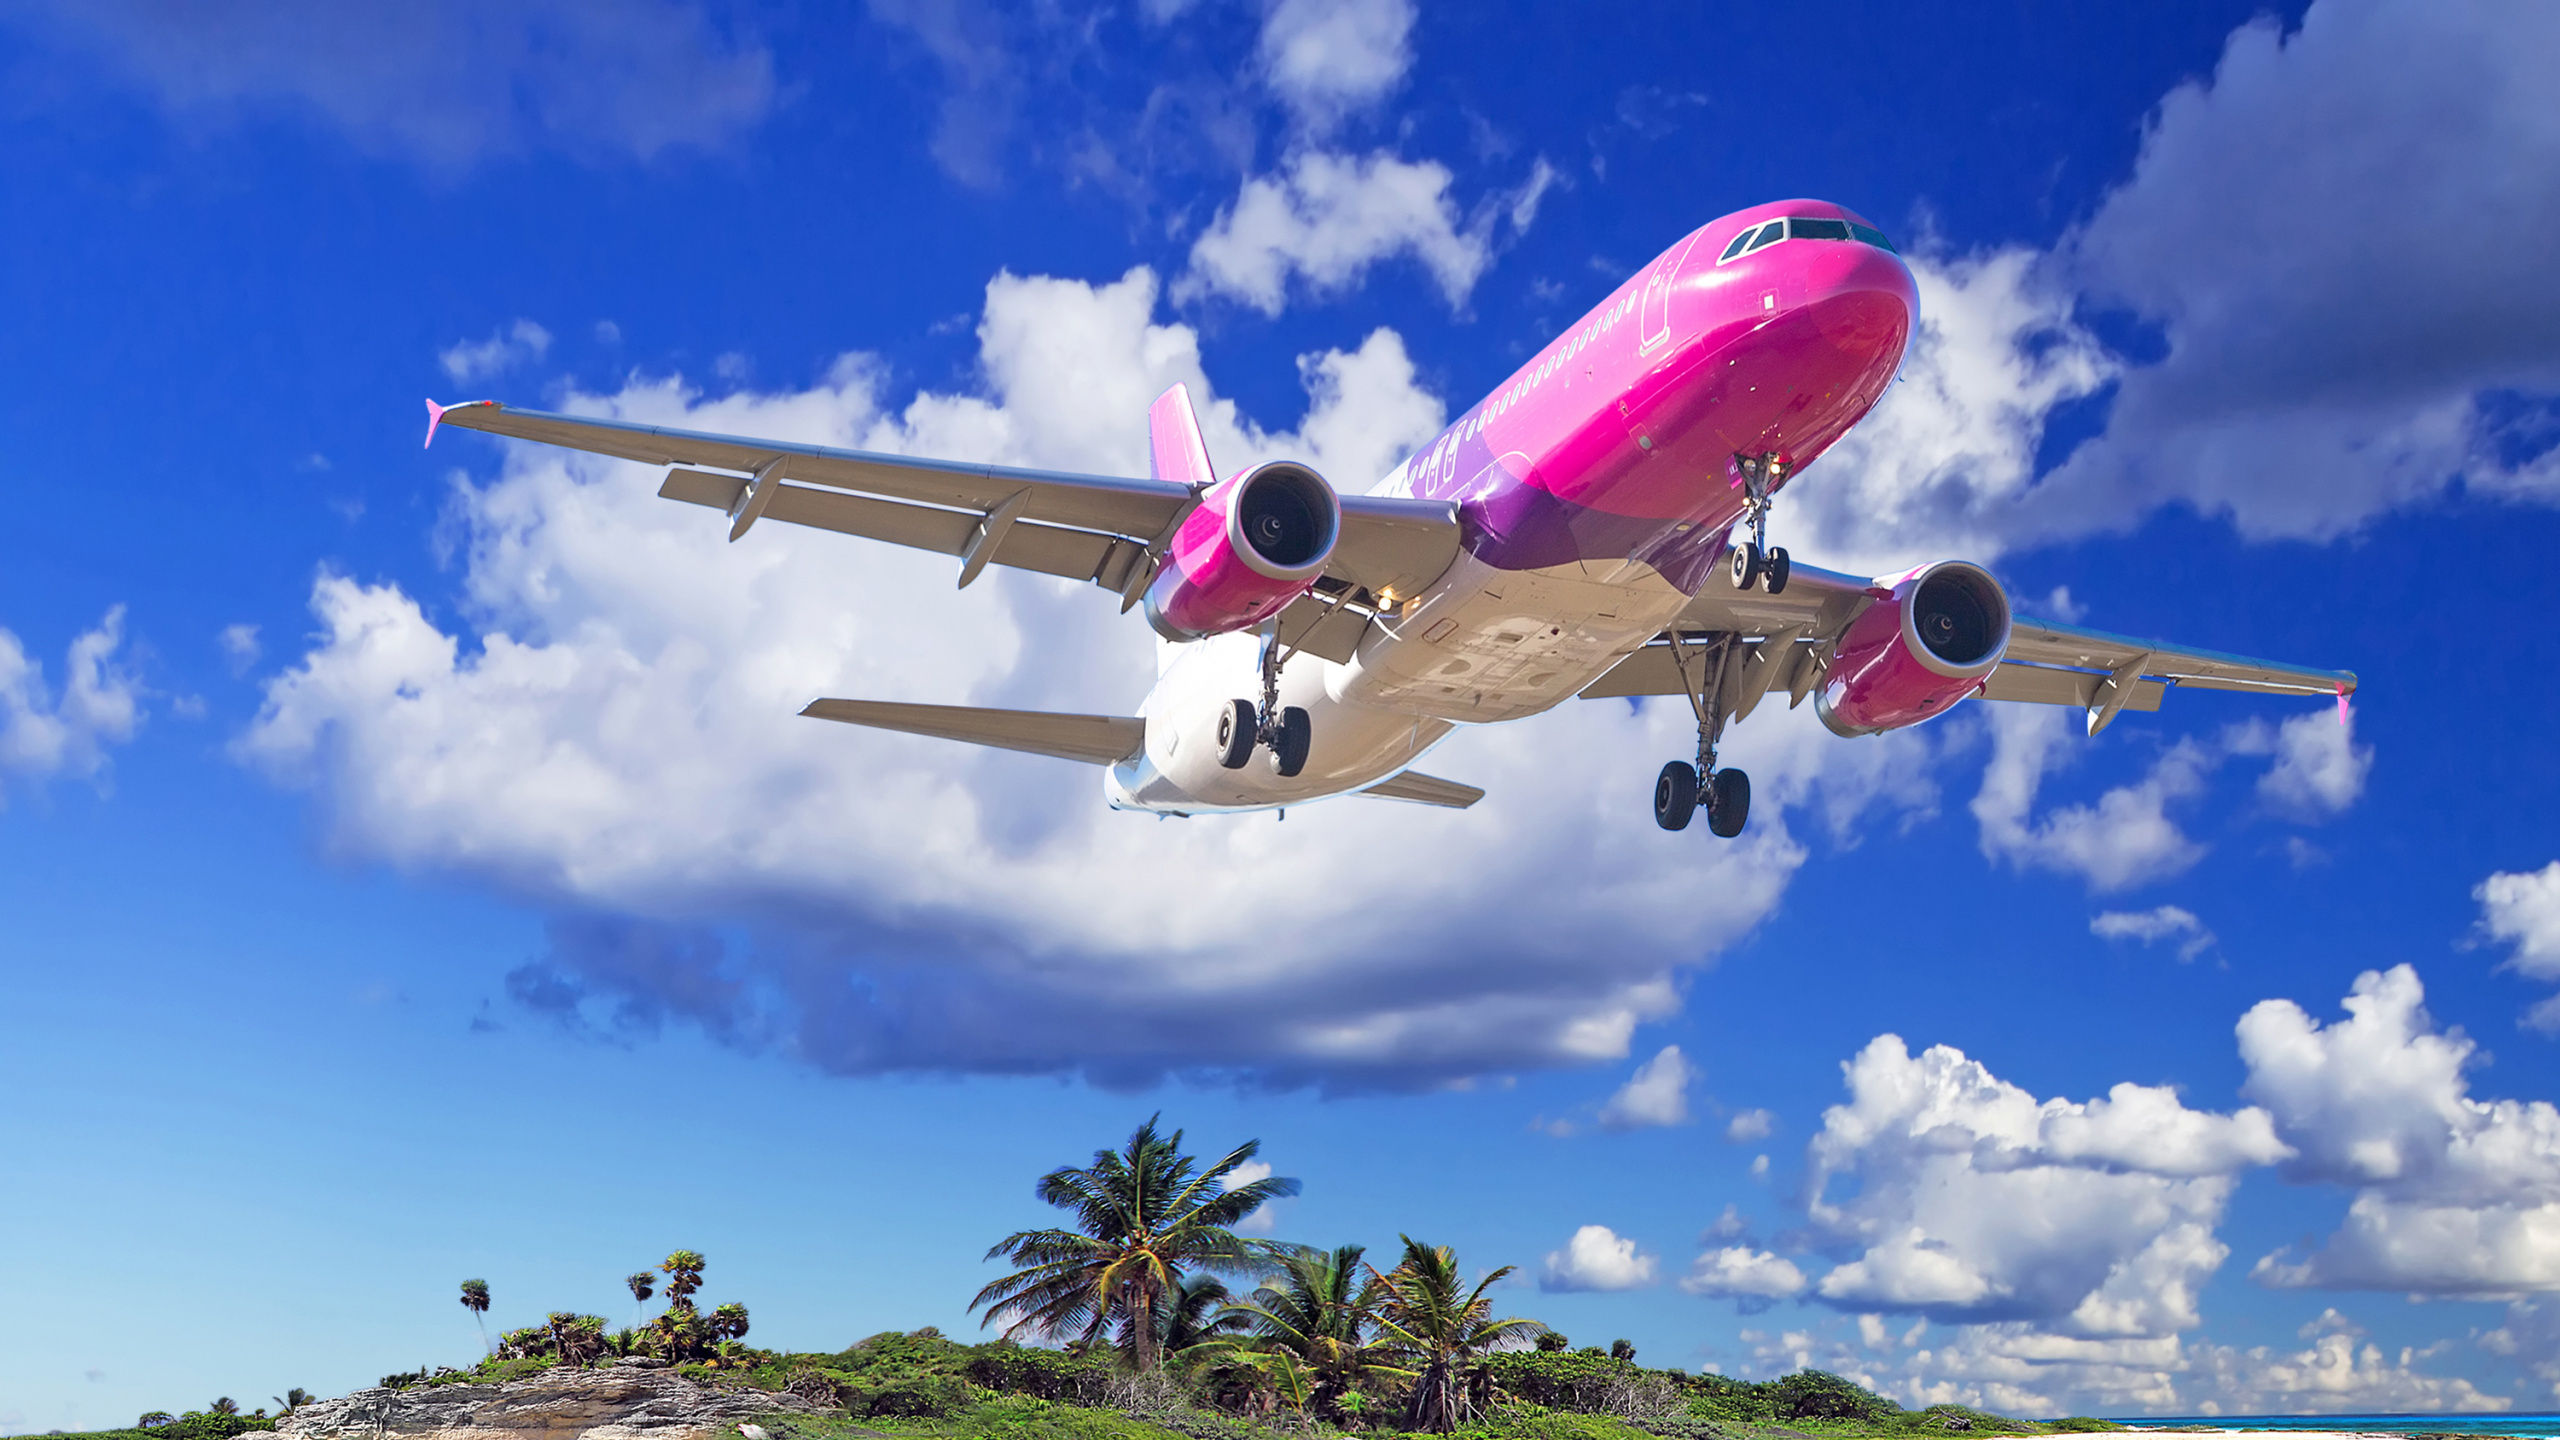 航班, 客机, 空中旅行, 航空公司, 狭窄的飞机的身体 壁纸 2560x1440 允许